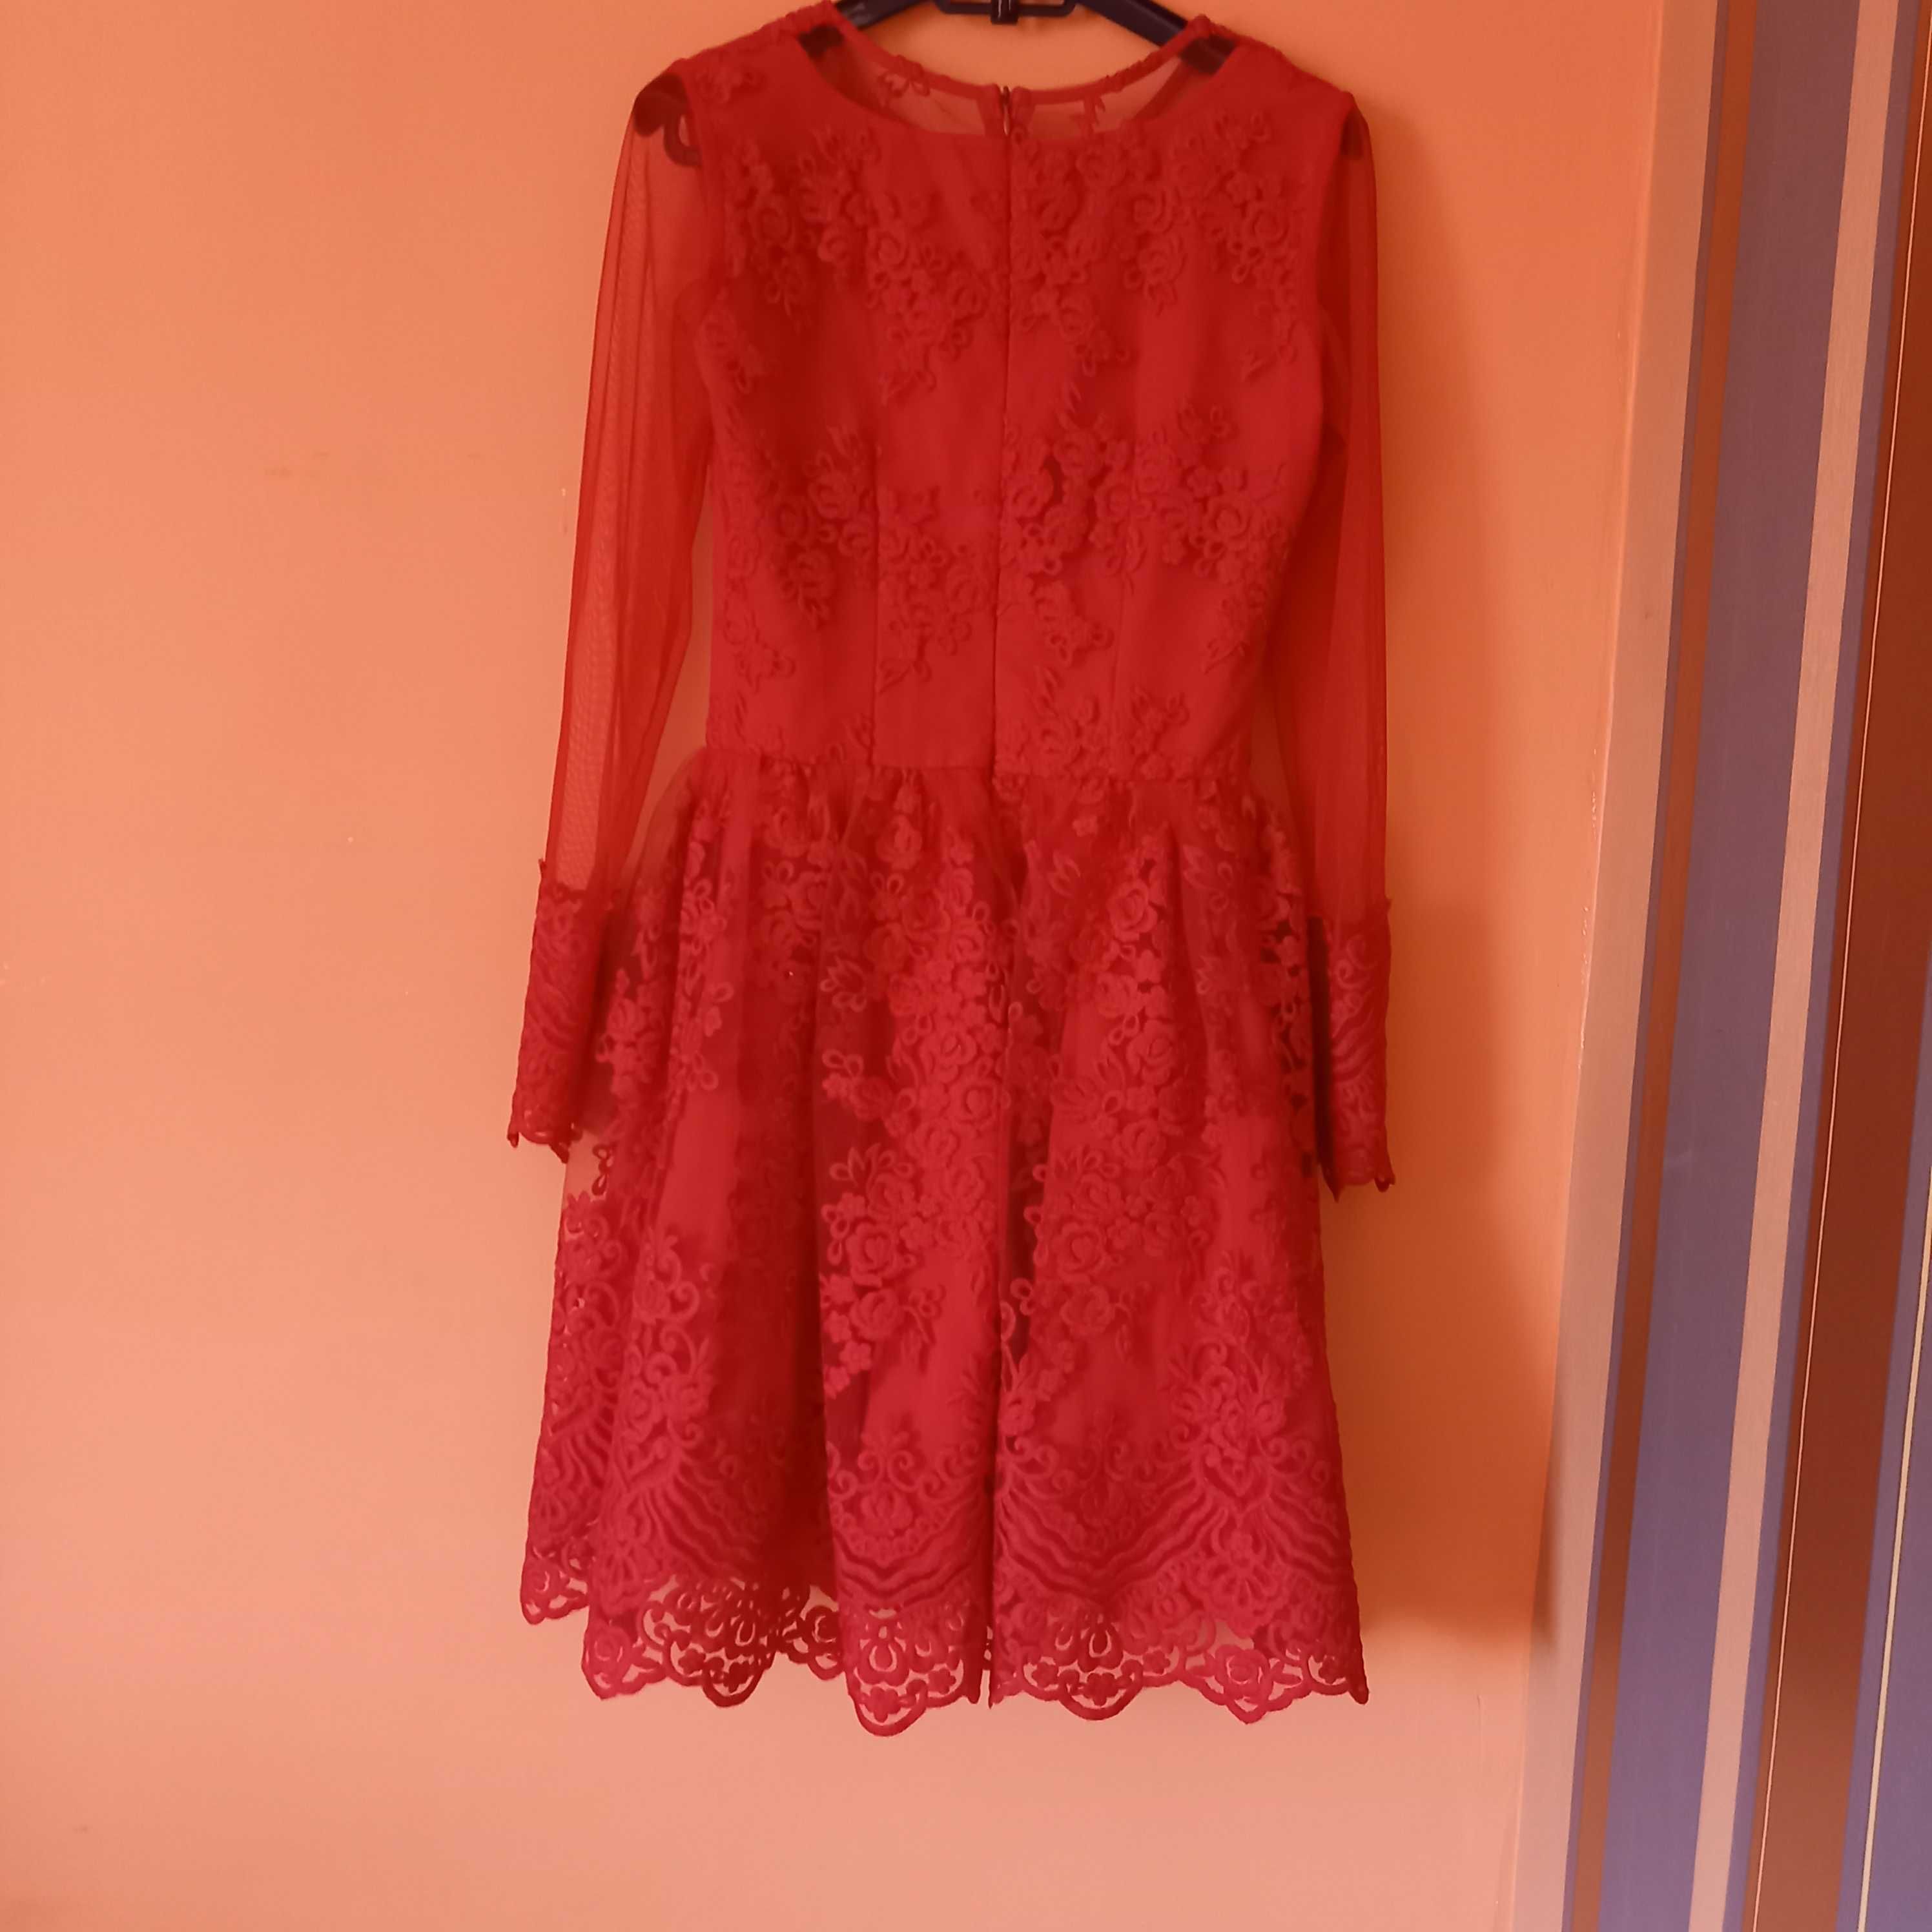 czerwona koronkowa sukienka S